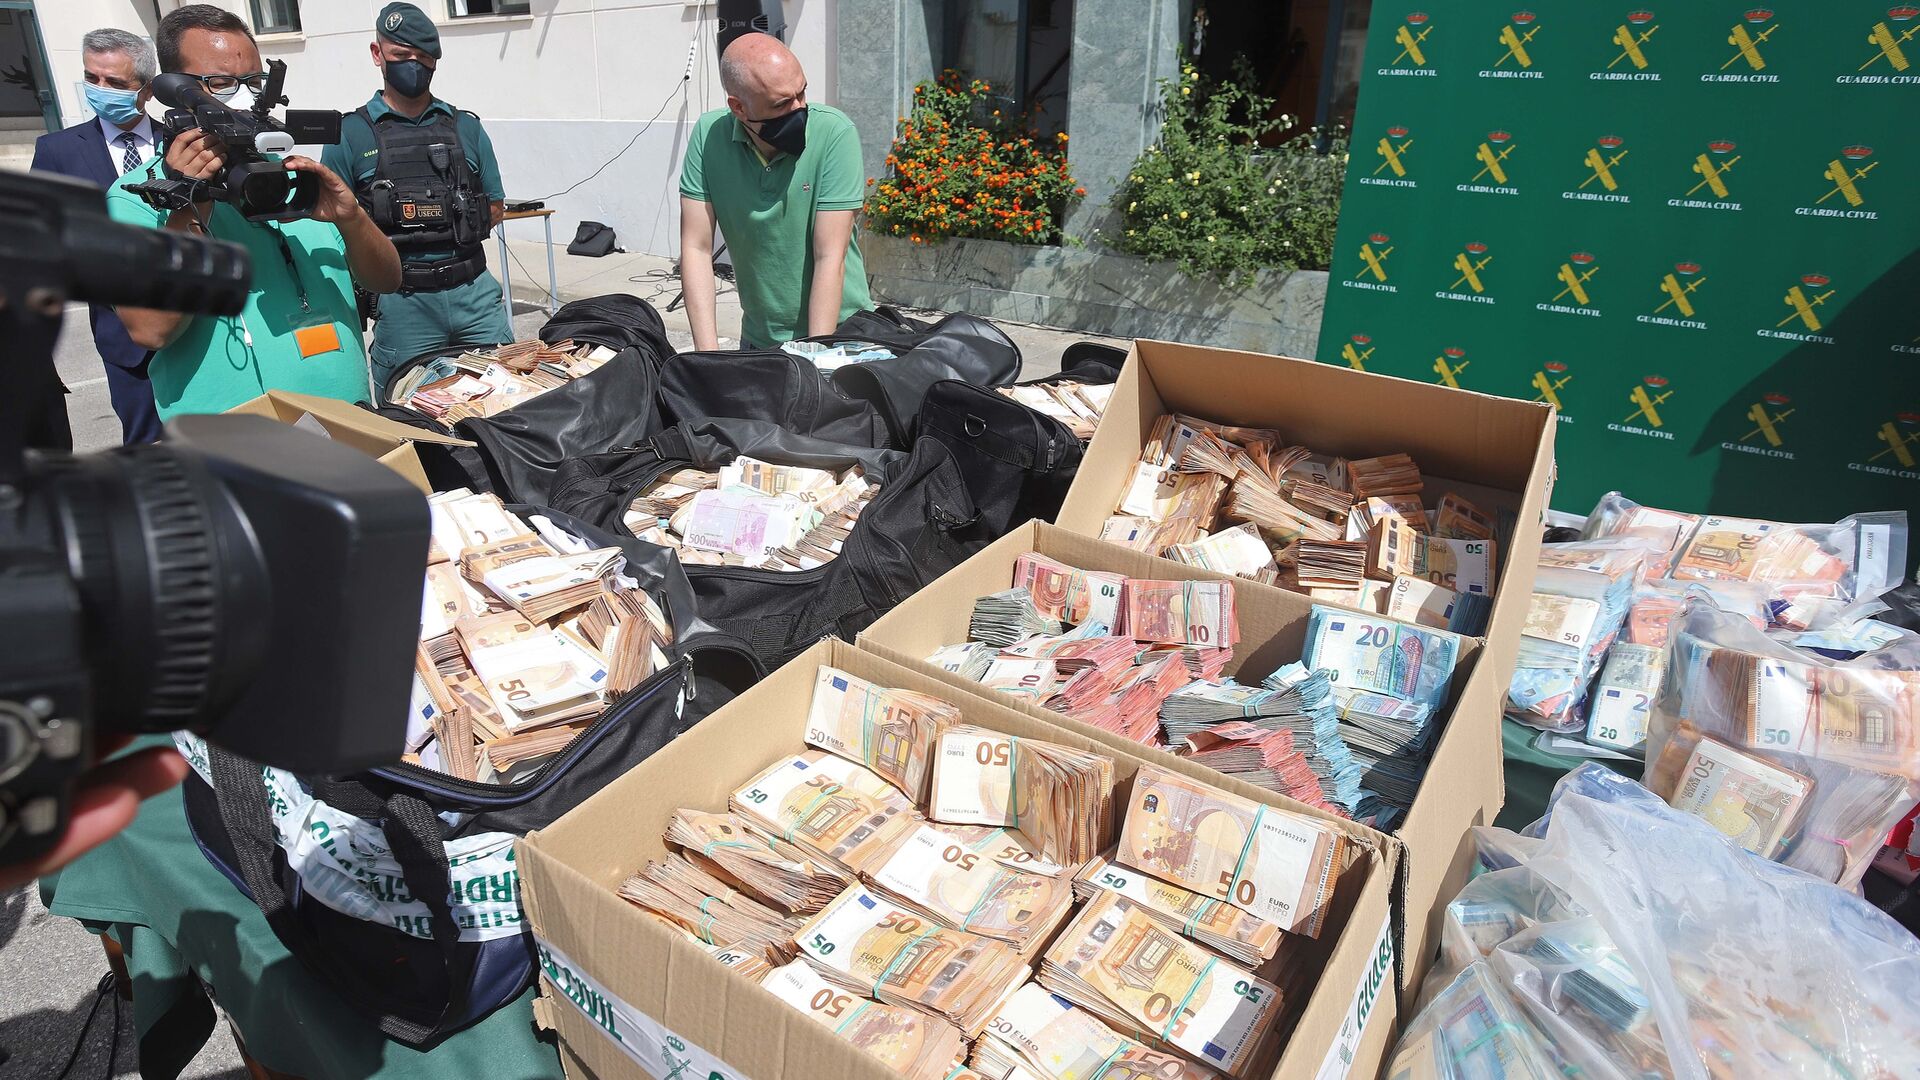 Fotos del dinero incautado en la operaci&oacute;n Jumita de la Guardia Civil en Algeciras